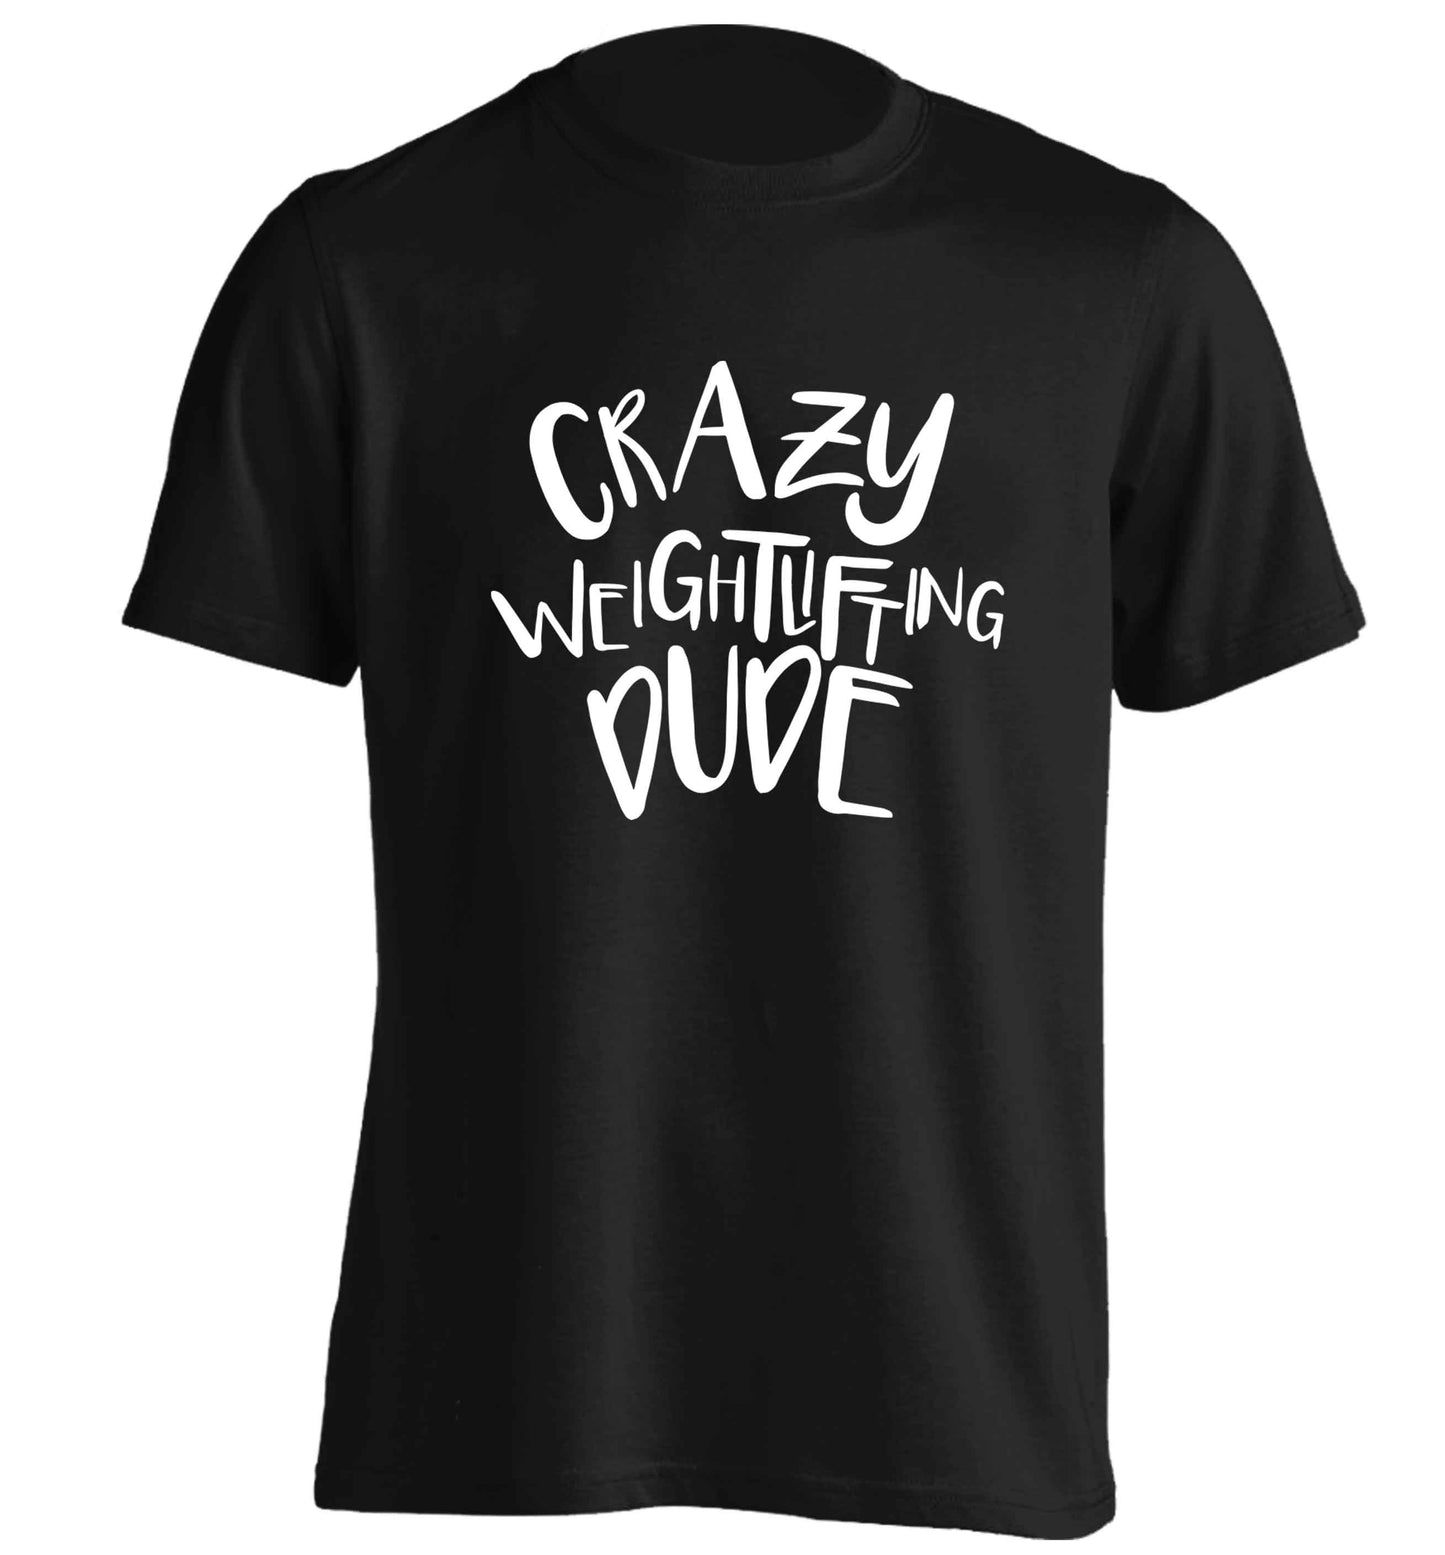 Crazy weightlifting dude adults unisex black Tshirt 2XL